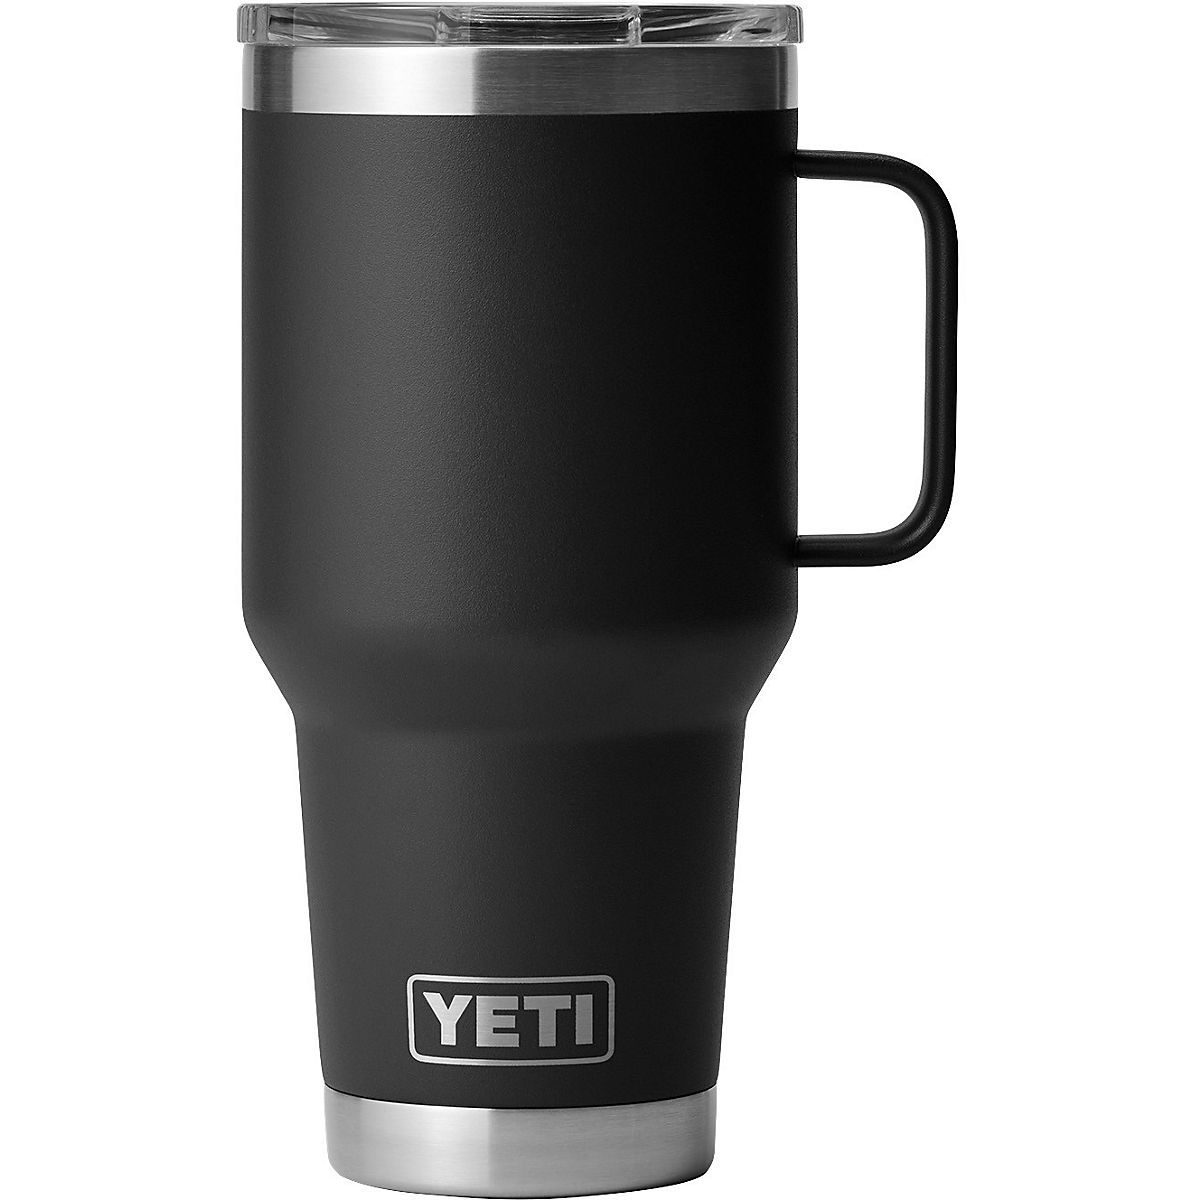 Yeti, Kitchen, New Yeti Rambler 3 Oz Travel Mug With Stronghold Lid